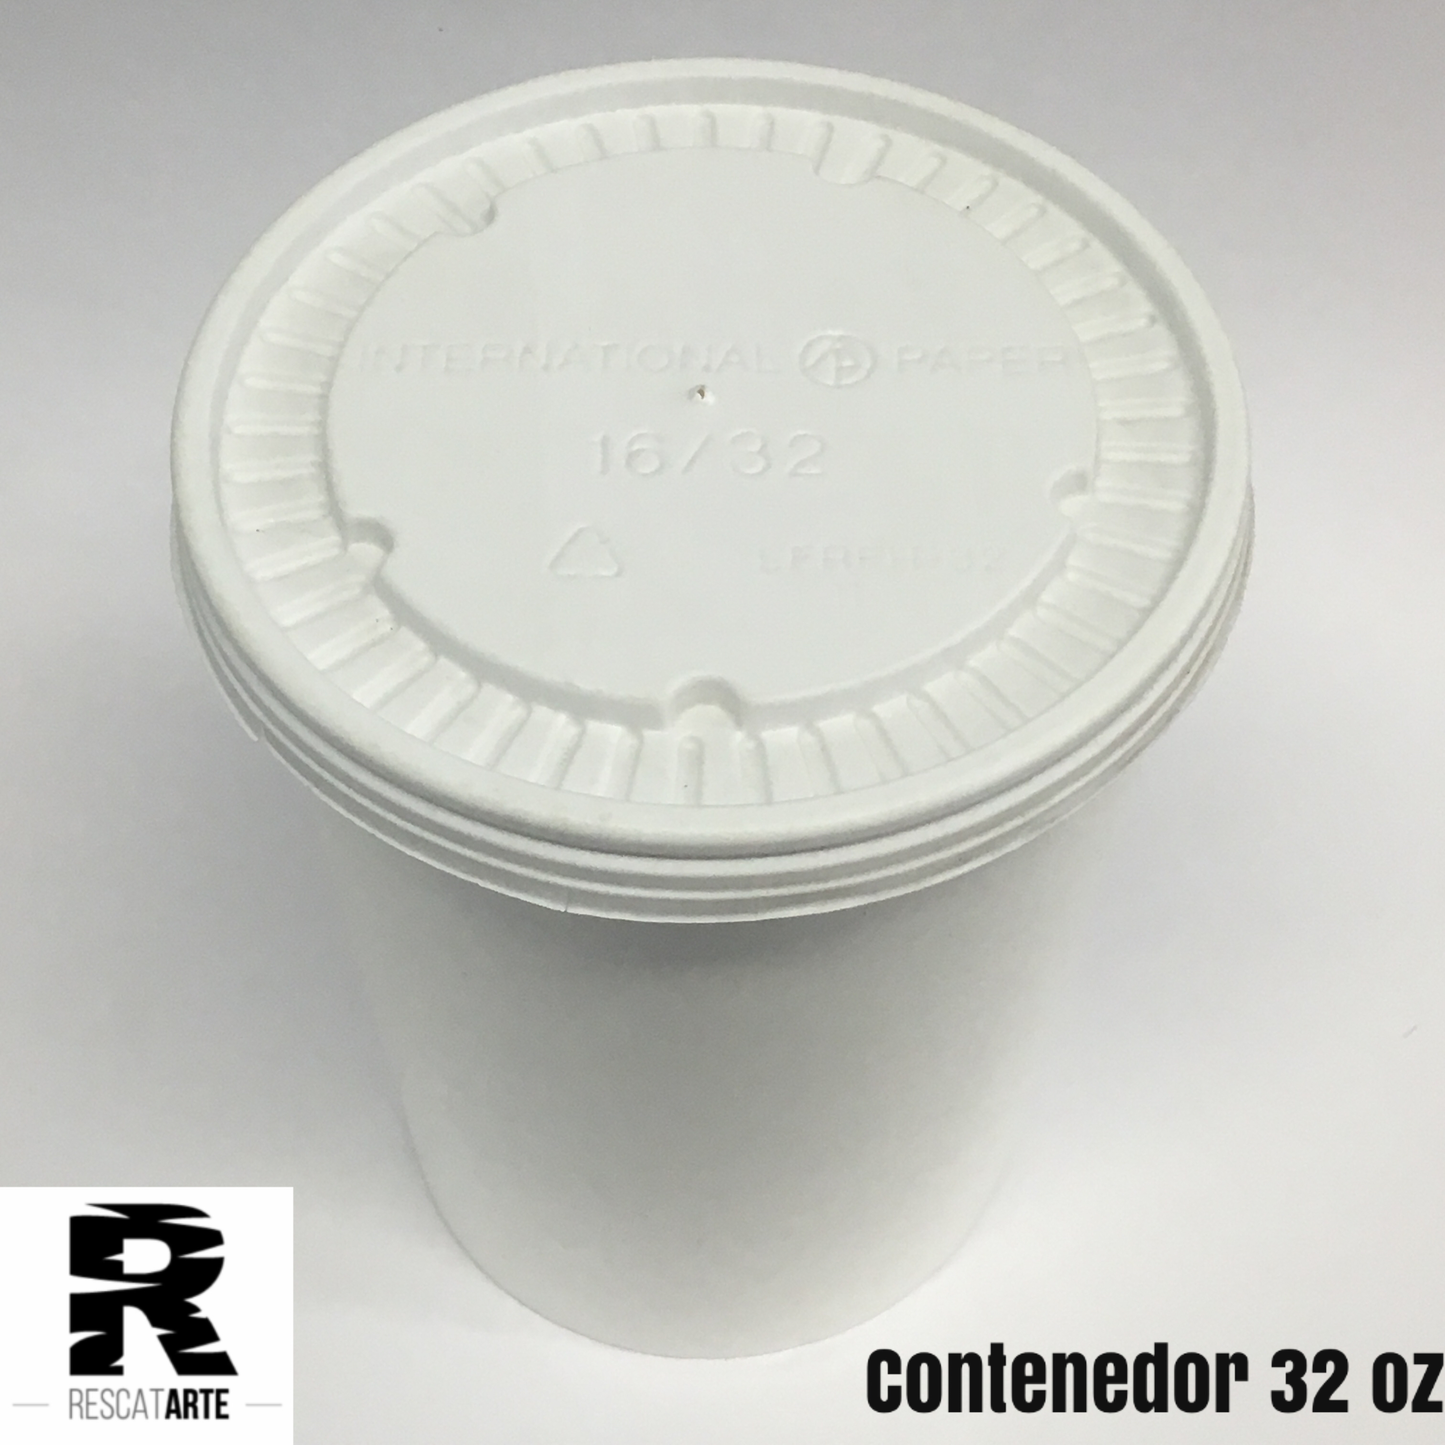 Contenedor desechable de 32 oz con tapa, elaborada en papel- 100% biodegradable